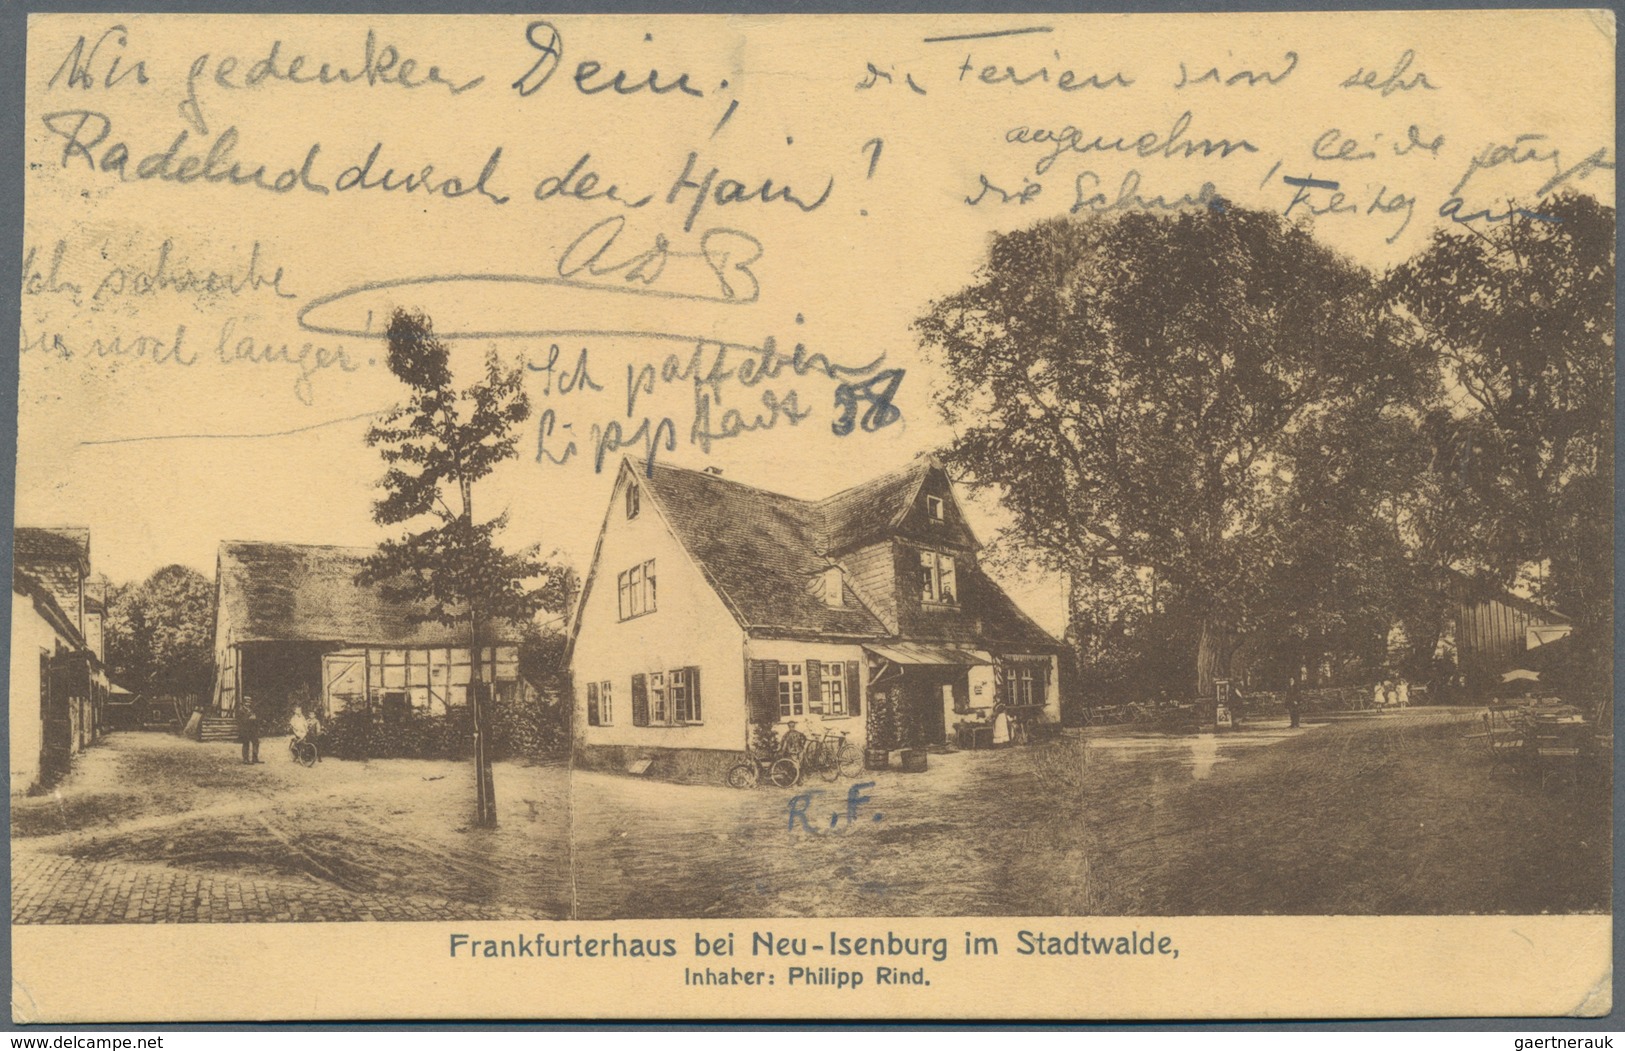 Ansichtskarten: Hessen: FRANKFURT am Main und etwas Umgebung (alte PLZ 6000-609), Schachtel mit gut